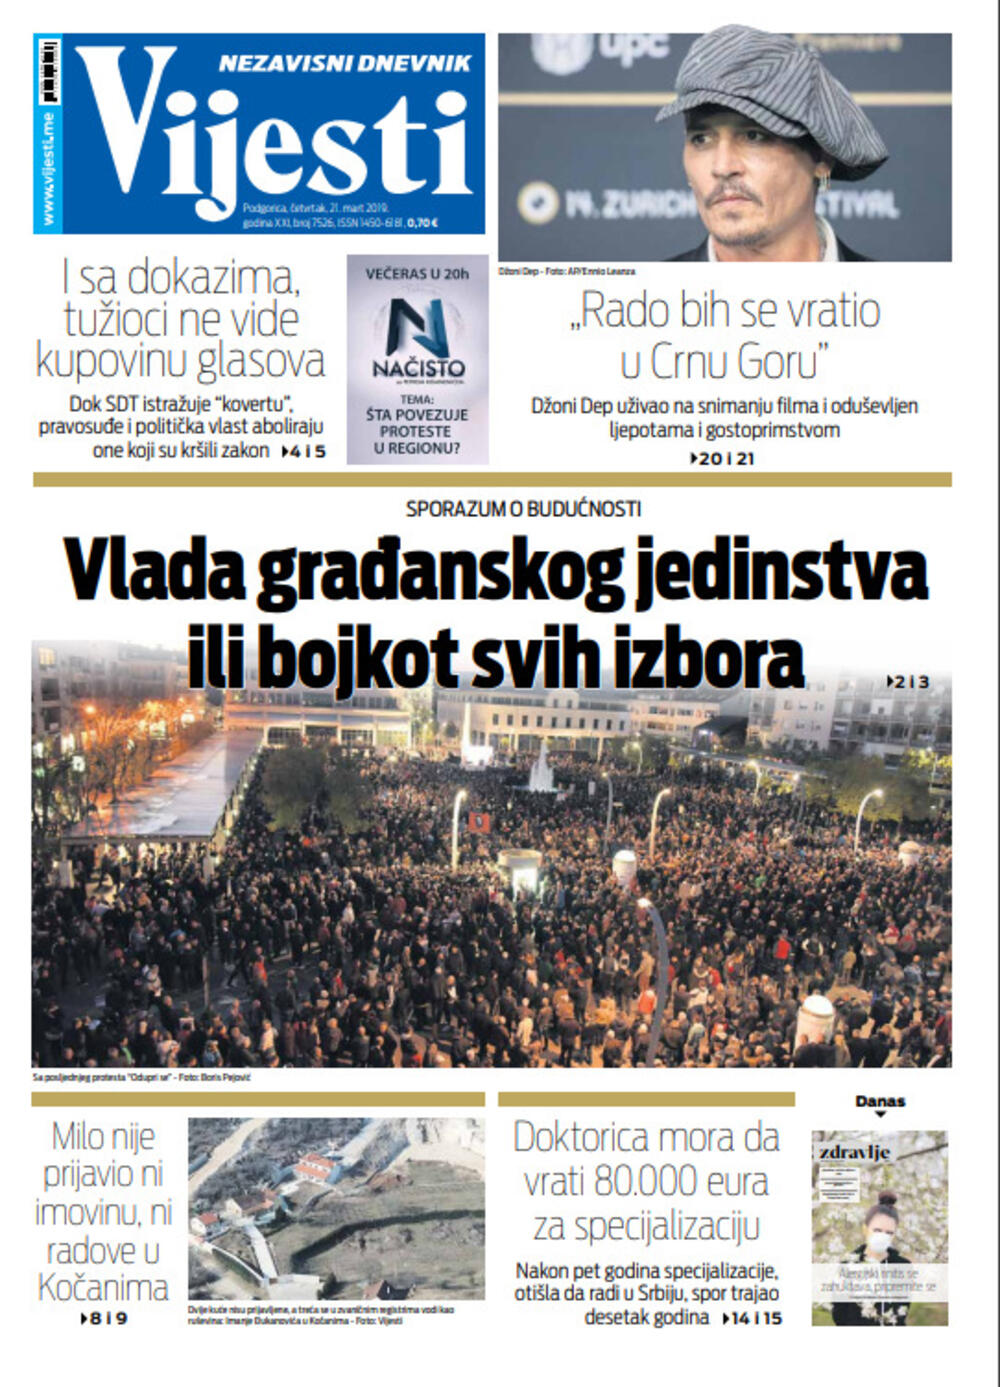 Naslovna strana "Vijesti" za 21. mart, Foto: "Vijesti"